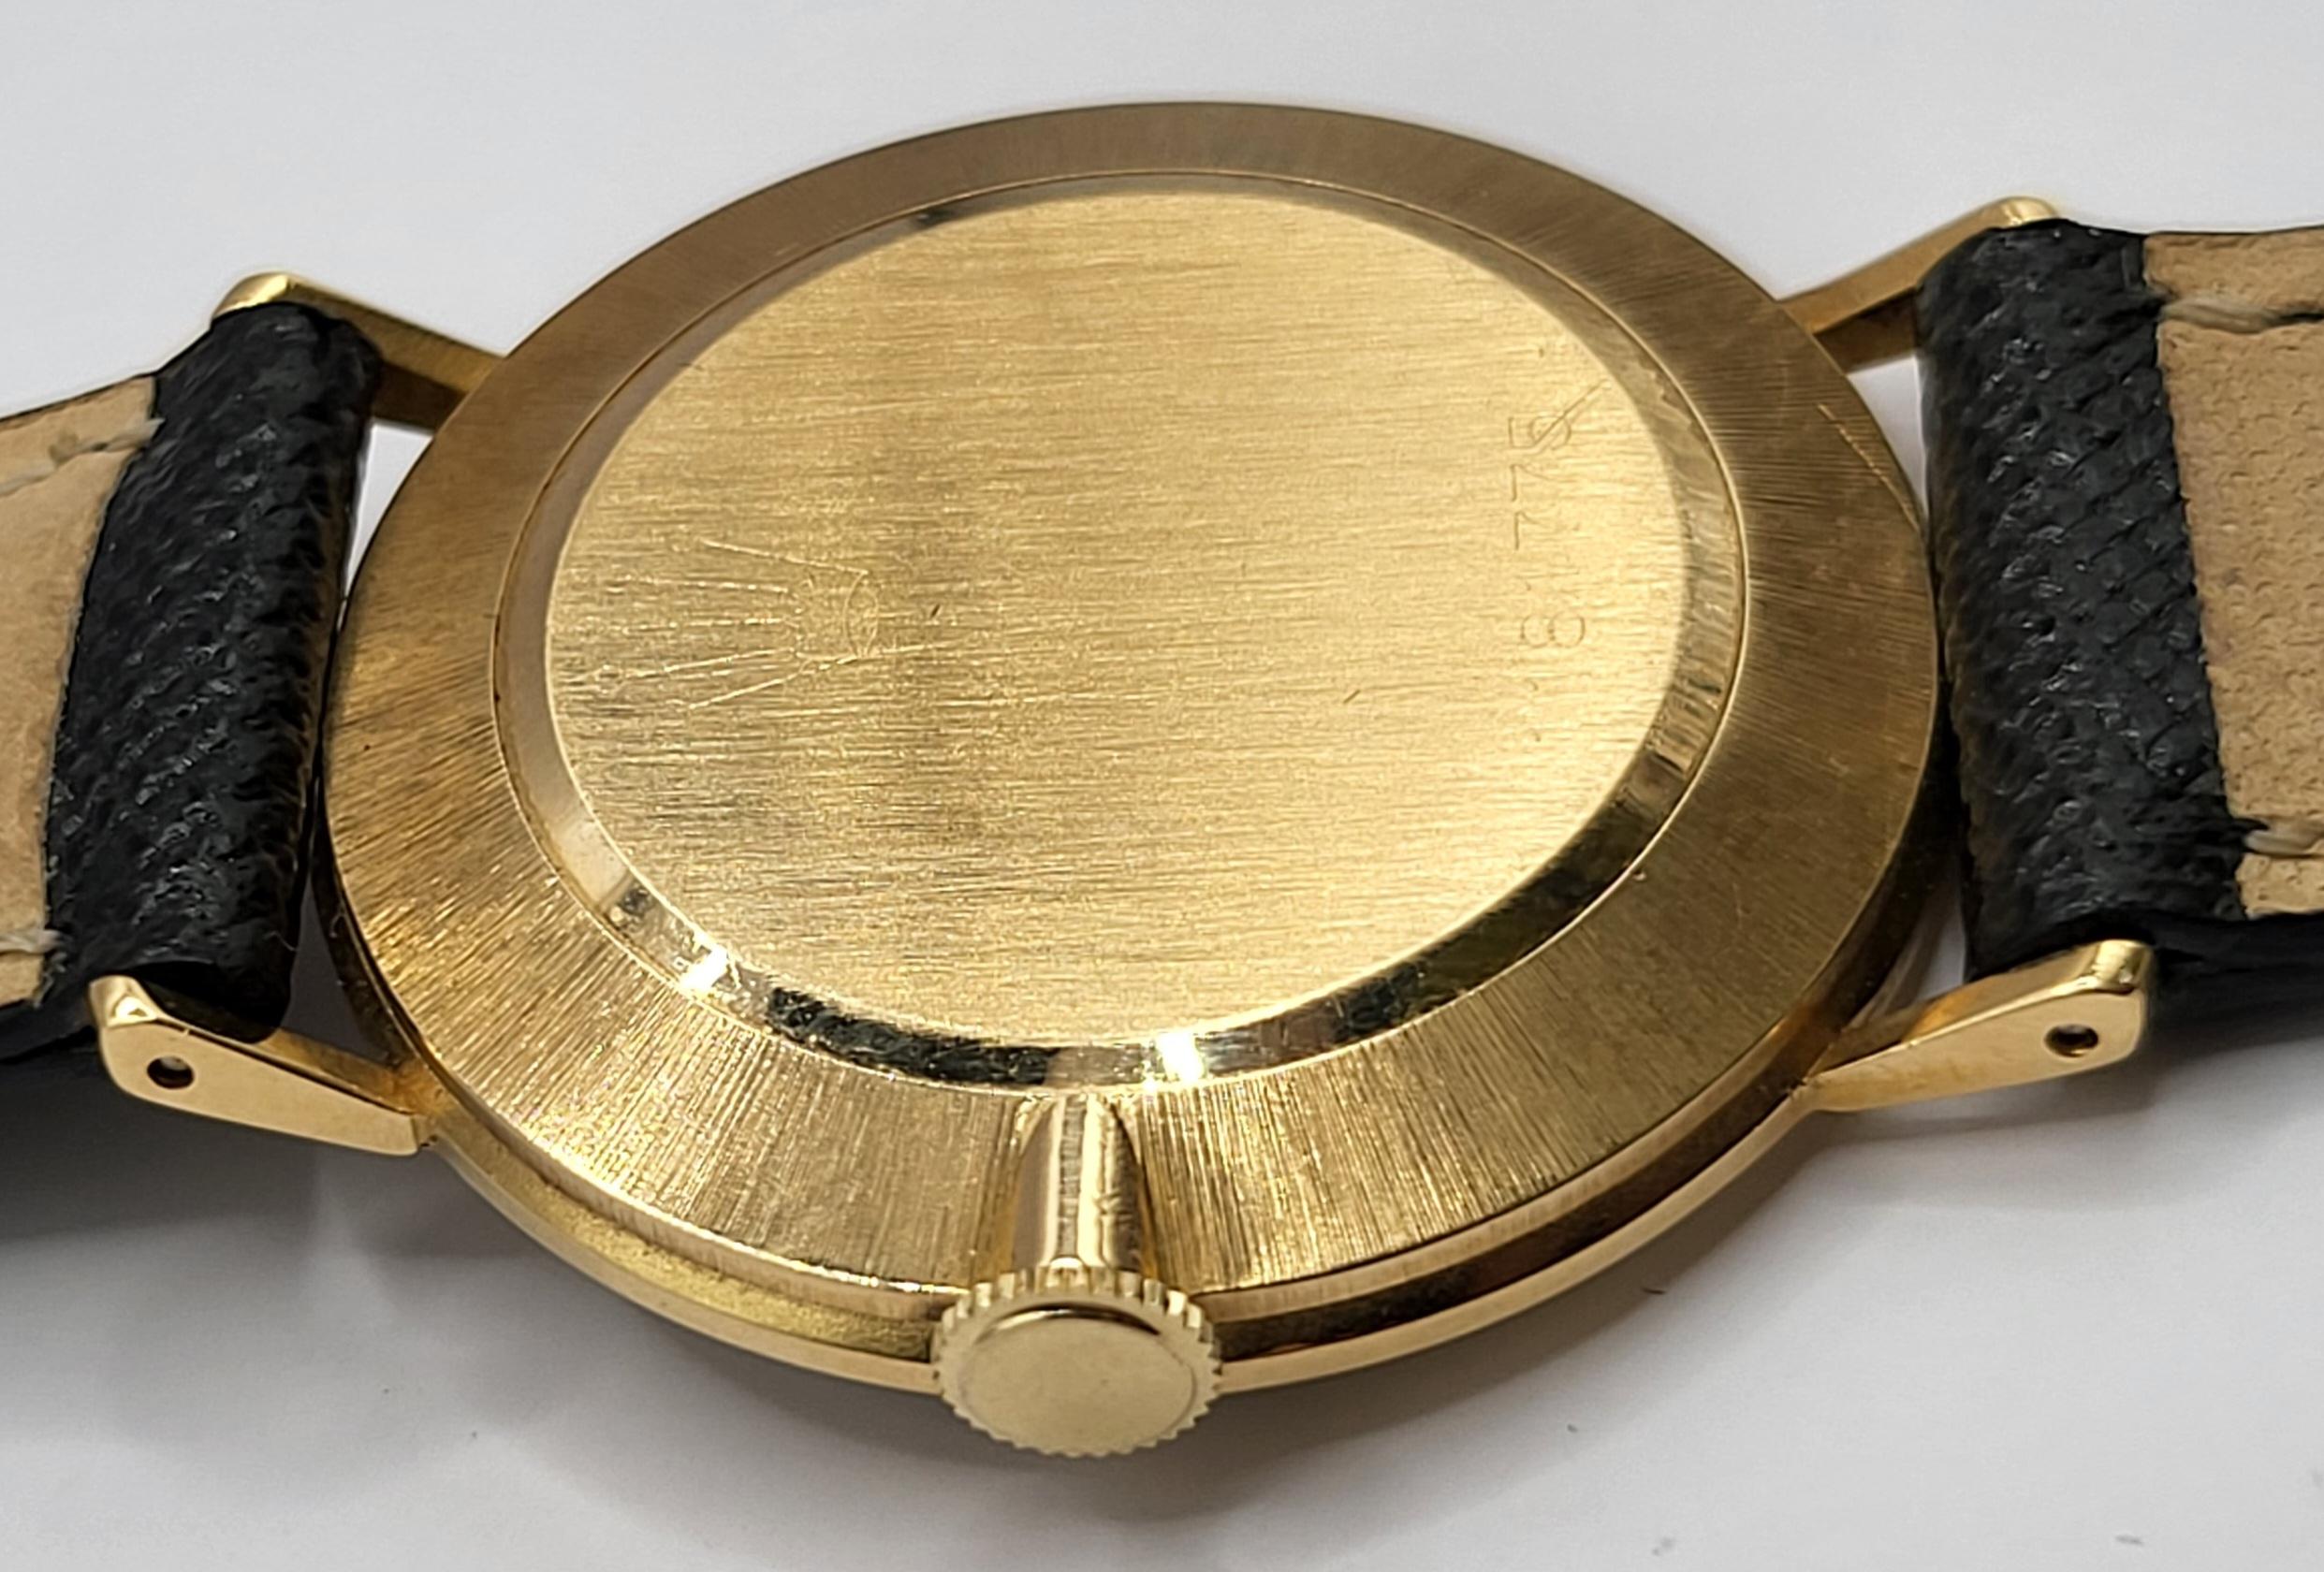 18kt Yellow Gold Rolex Dress Wrist Watch, Manual Winding 5